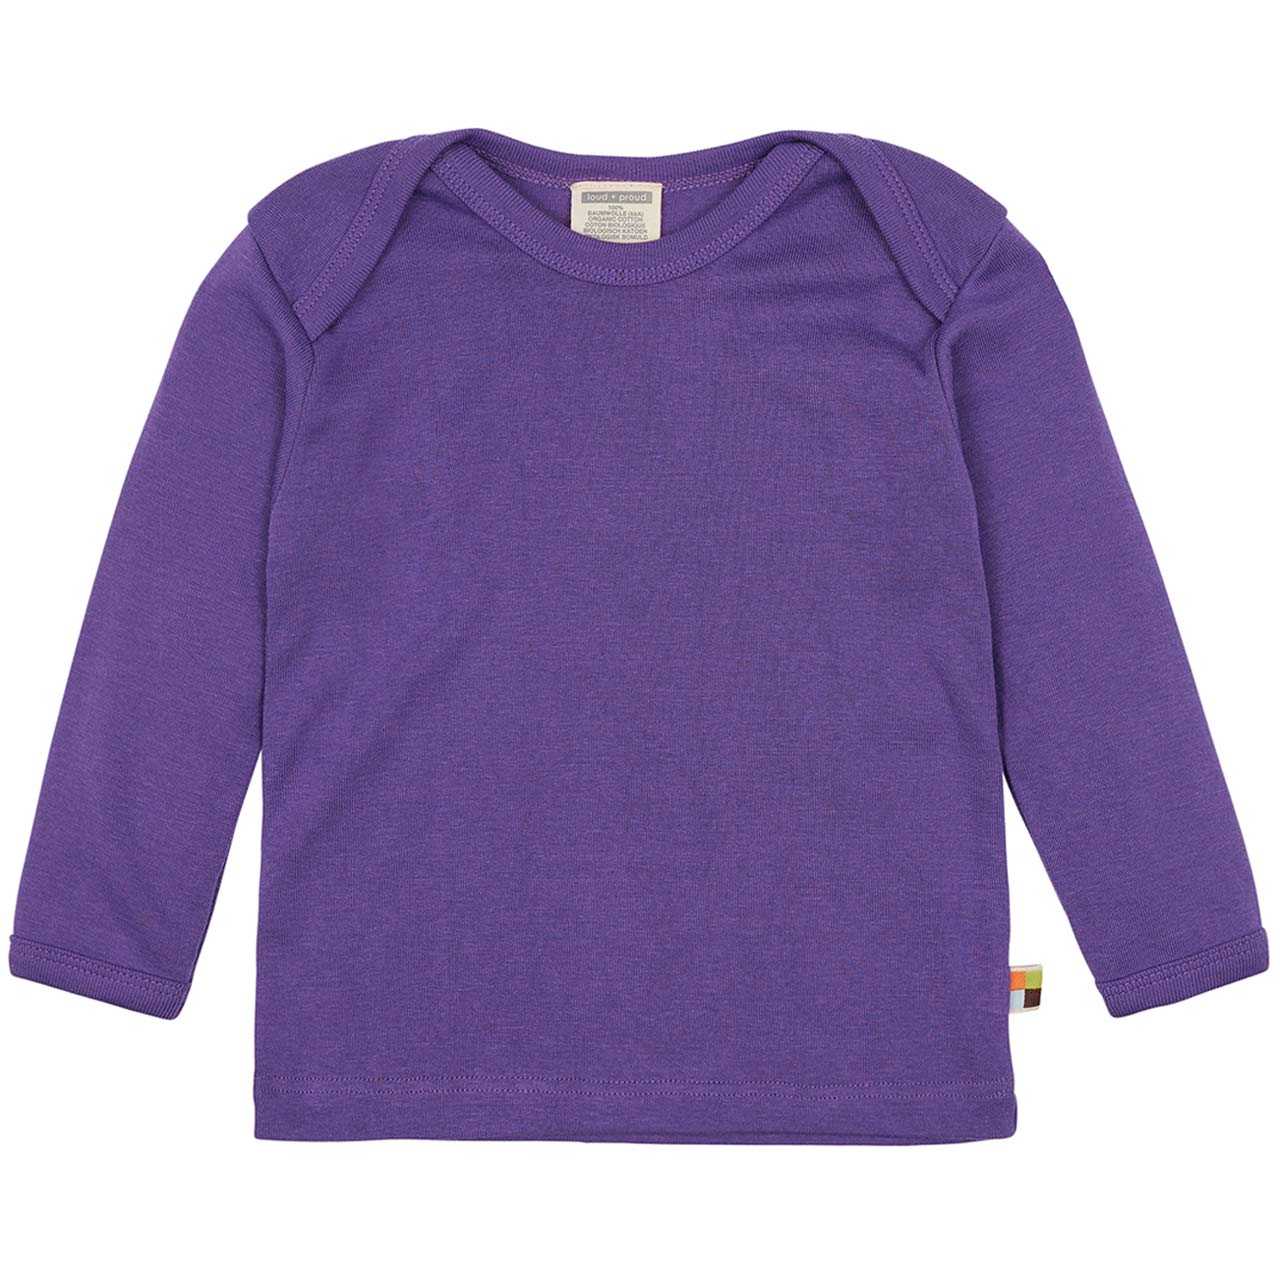 Feinripp Shirt weich und elastisch 100% Baumwolle lila